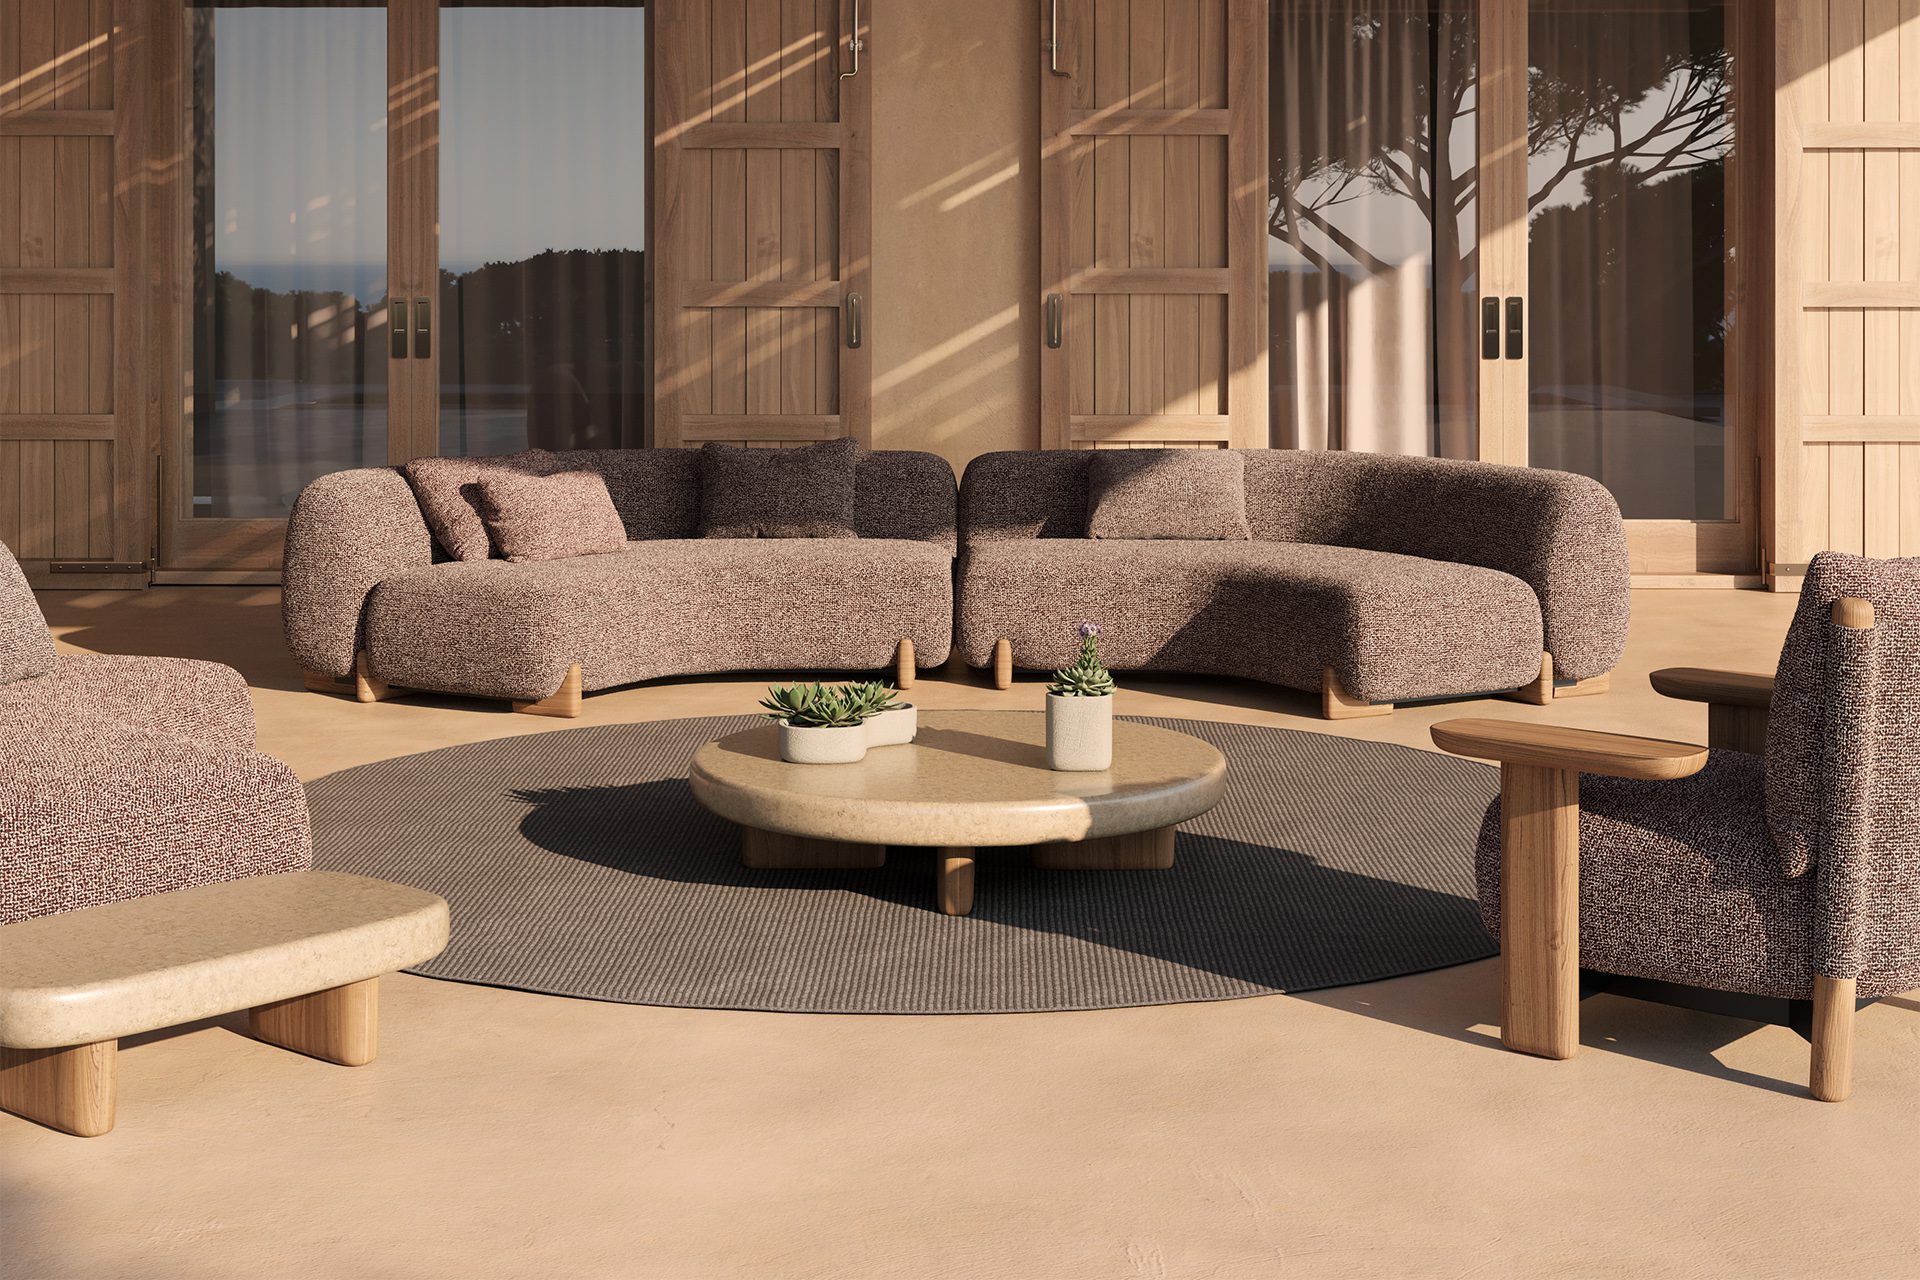 Vondom Milos outdoor furniture by Jean-Marie Massaud